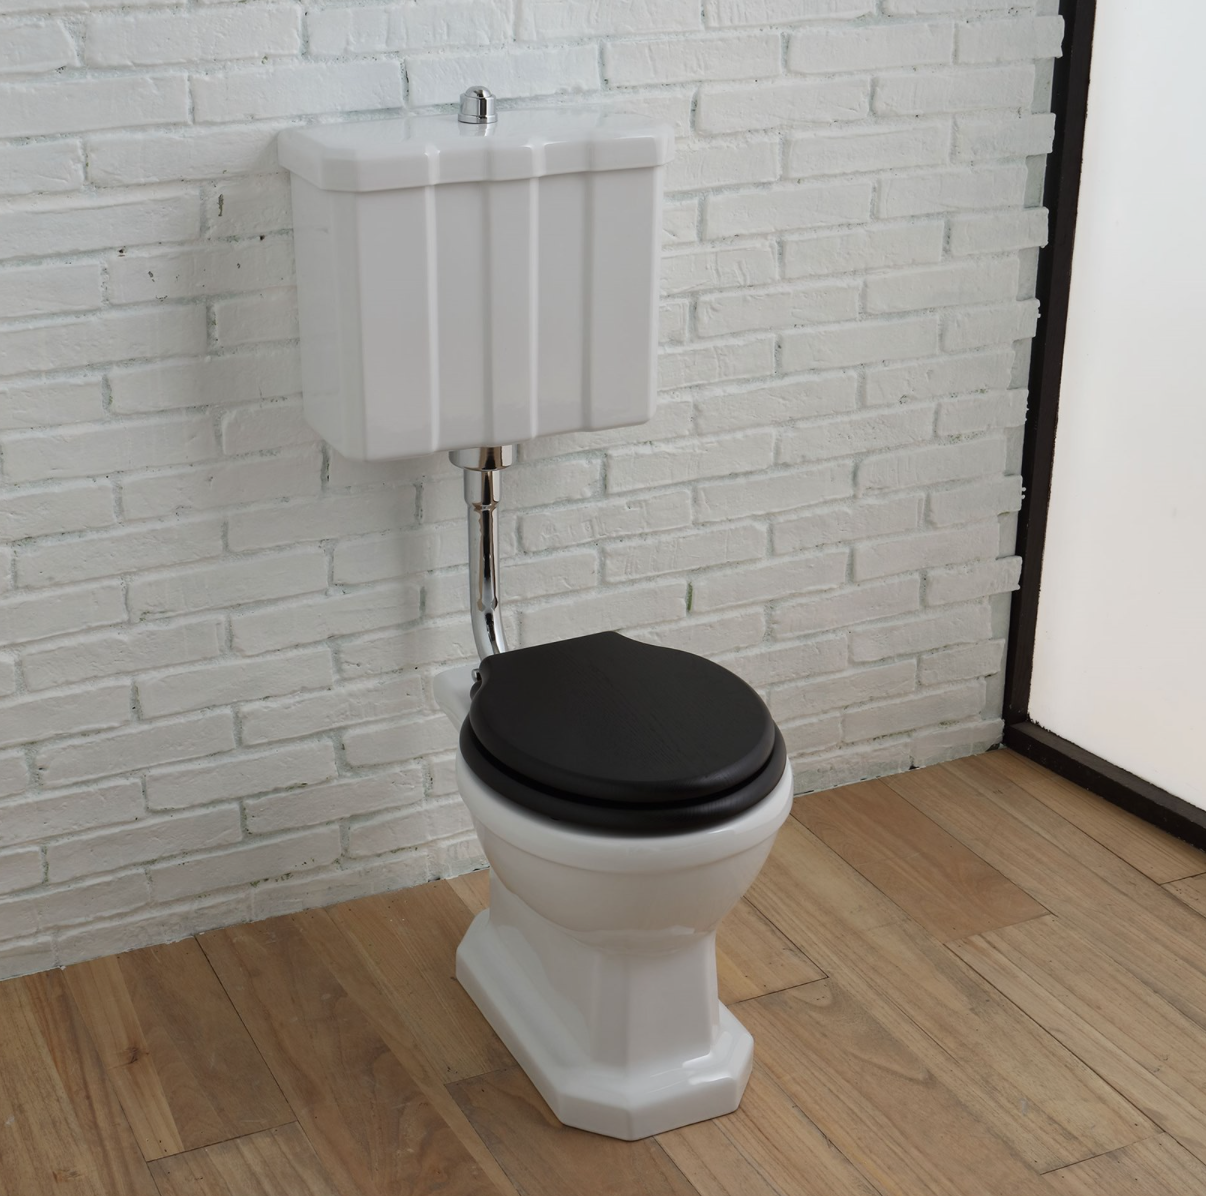 Tapa WC madera sin estrenar de segunda mano por 18 EUR en Mungia en WALLAPOP